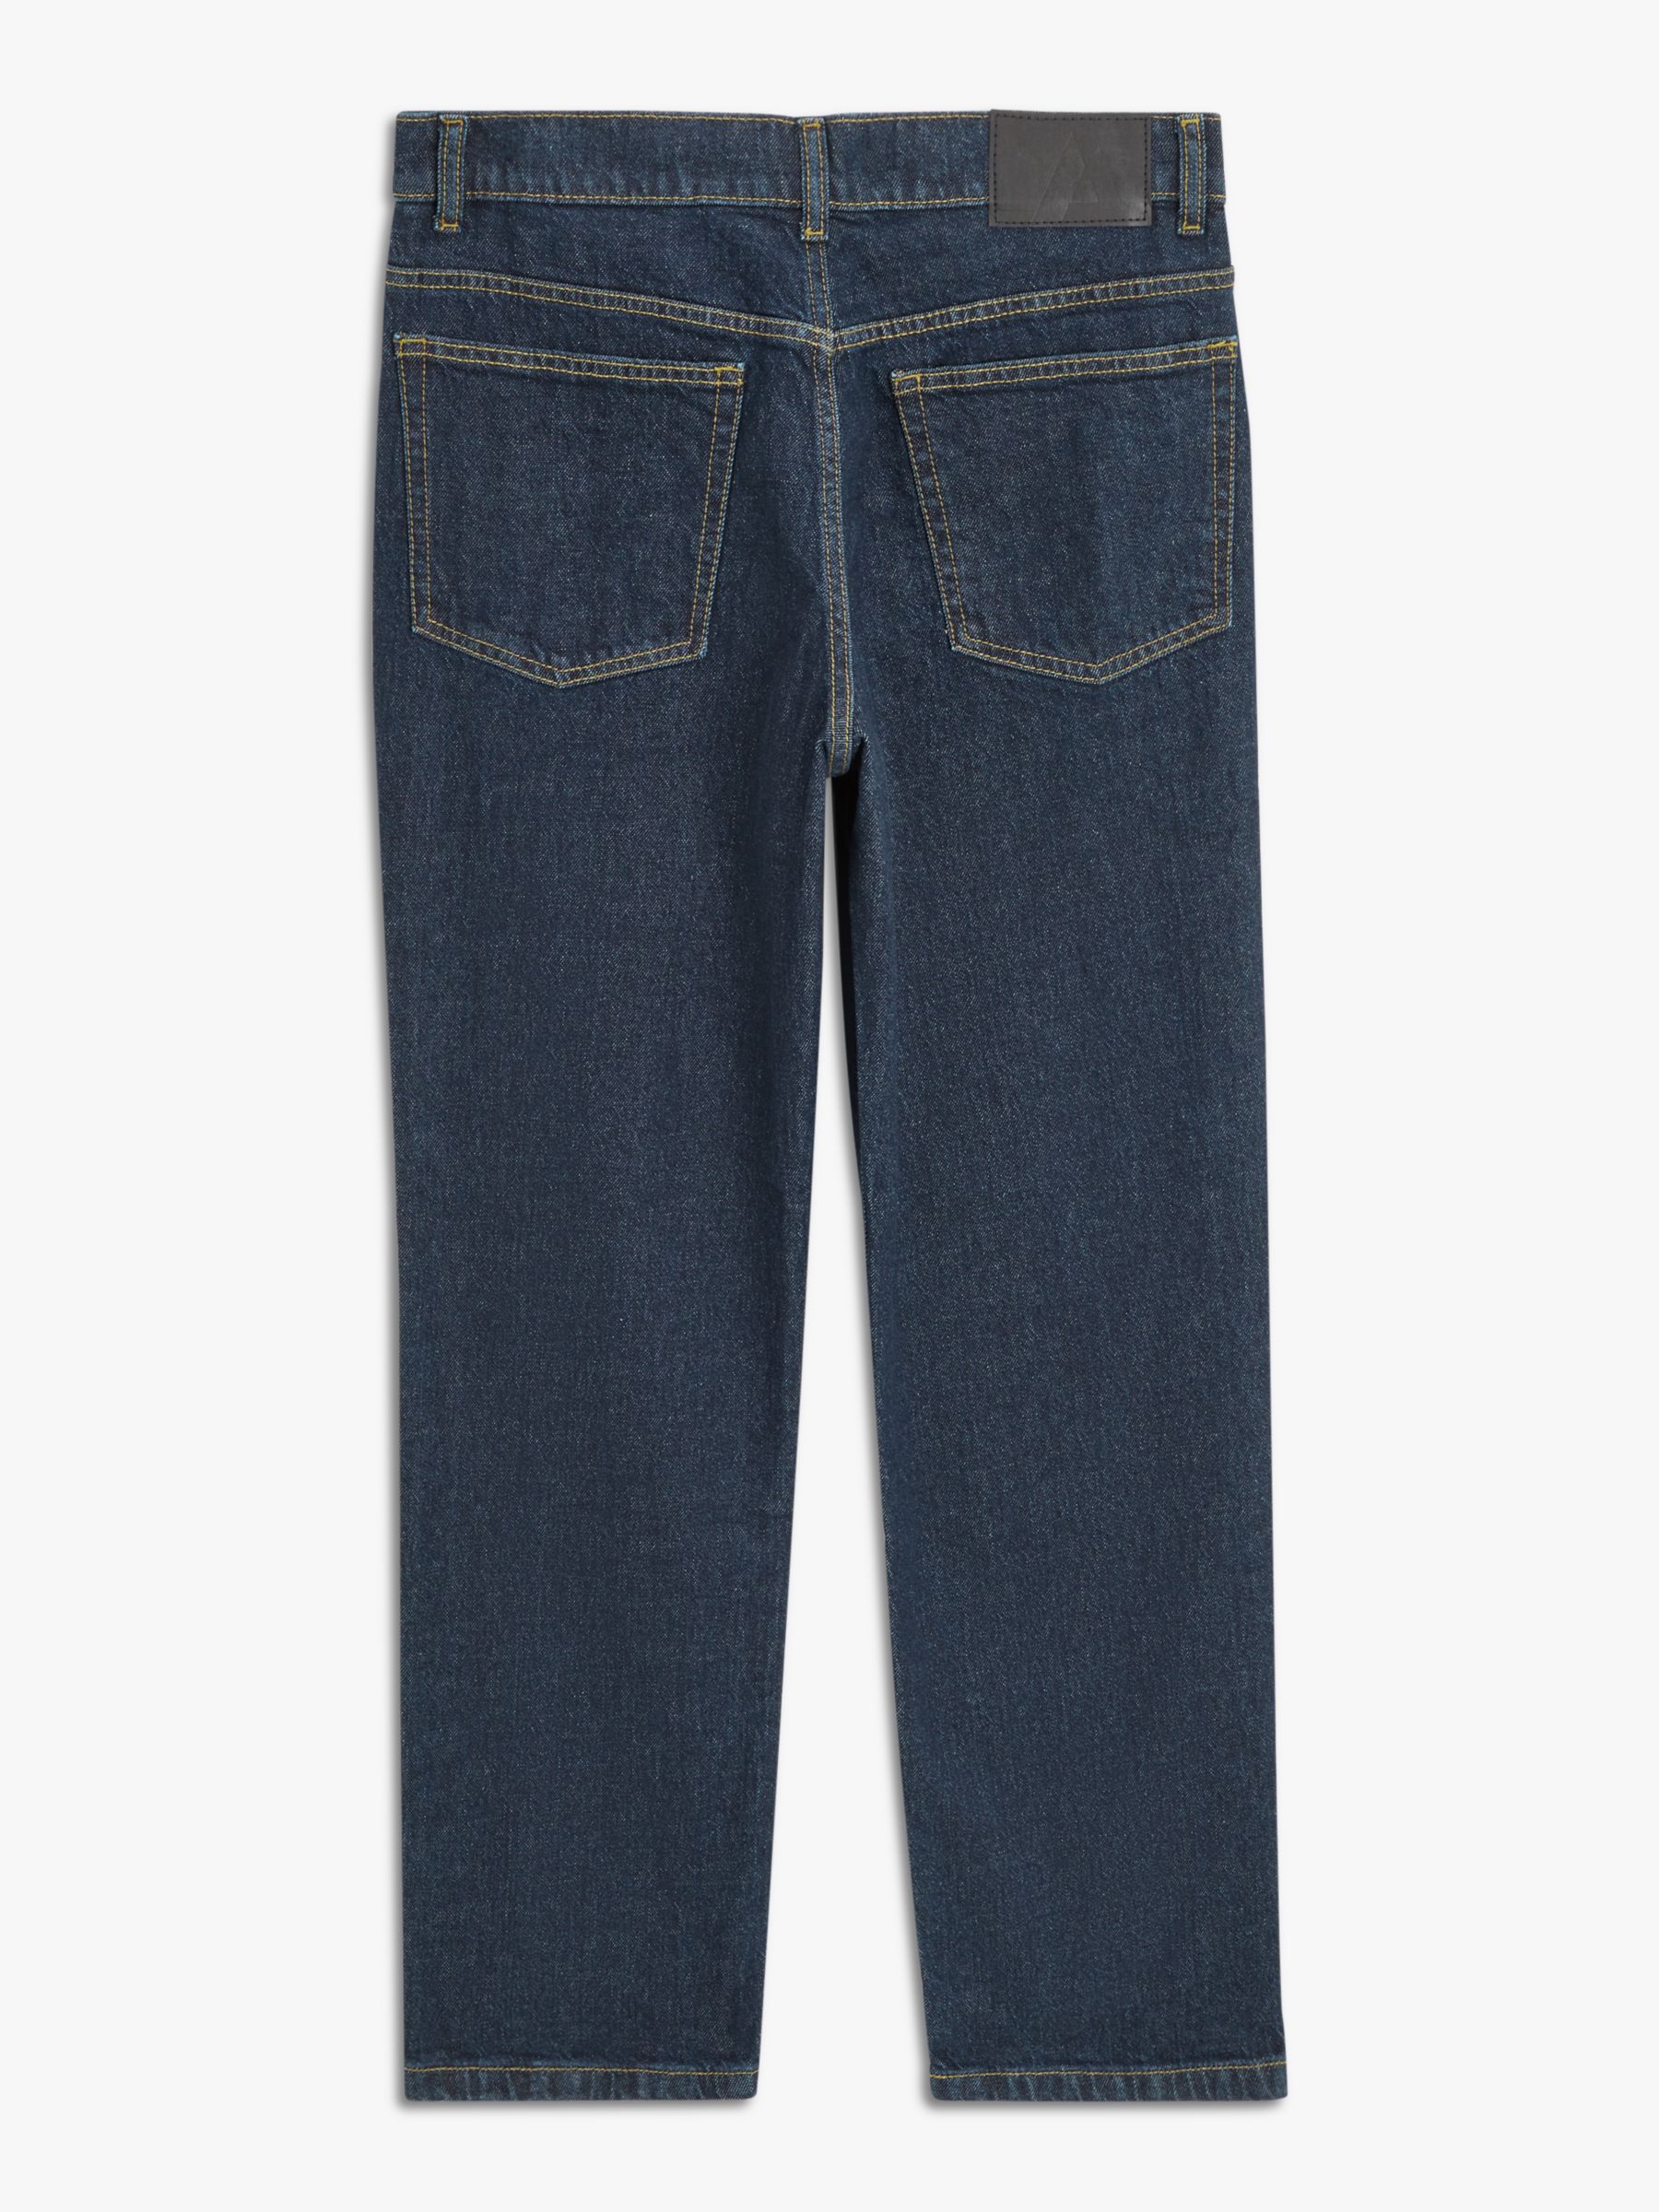 John Lewis ANYDAY Straight Fit Denim Jeans, Dark Wash, 30R